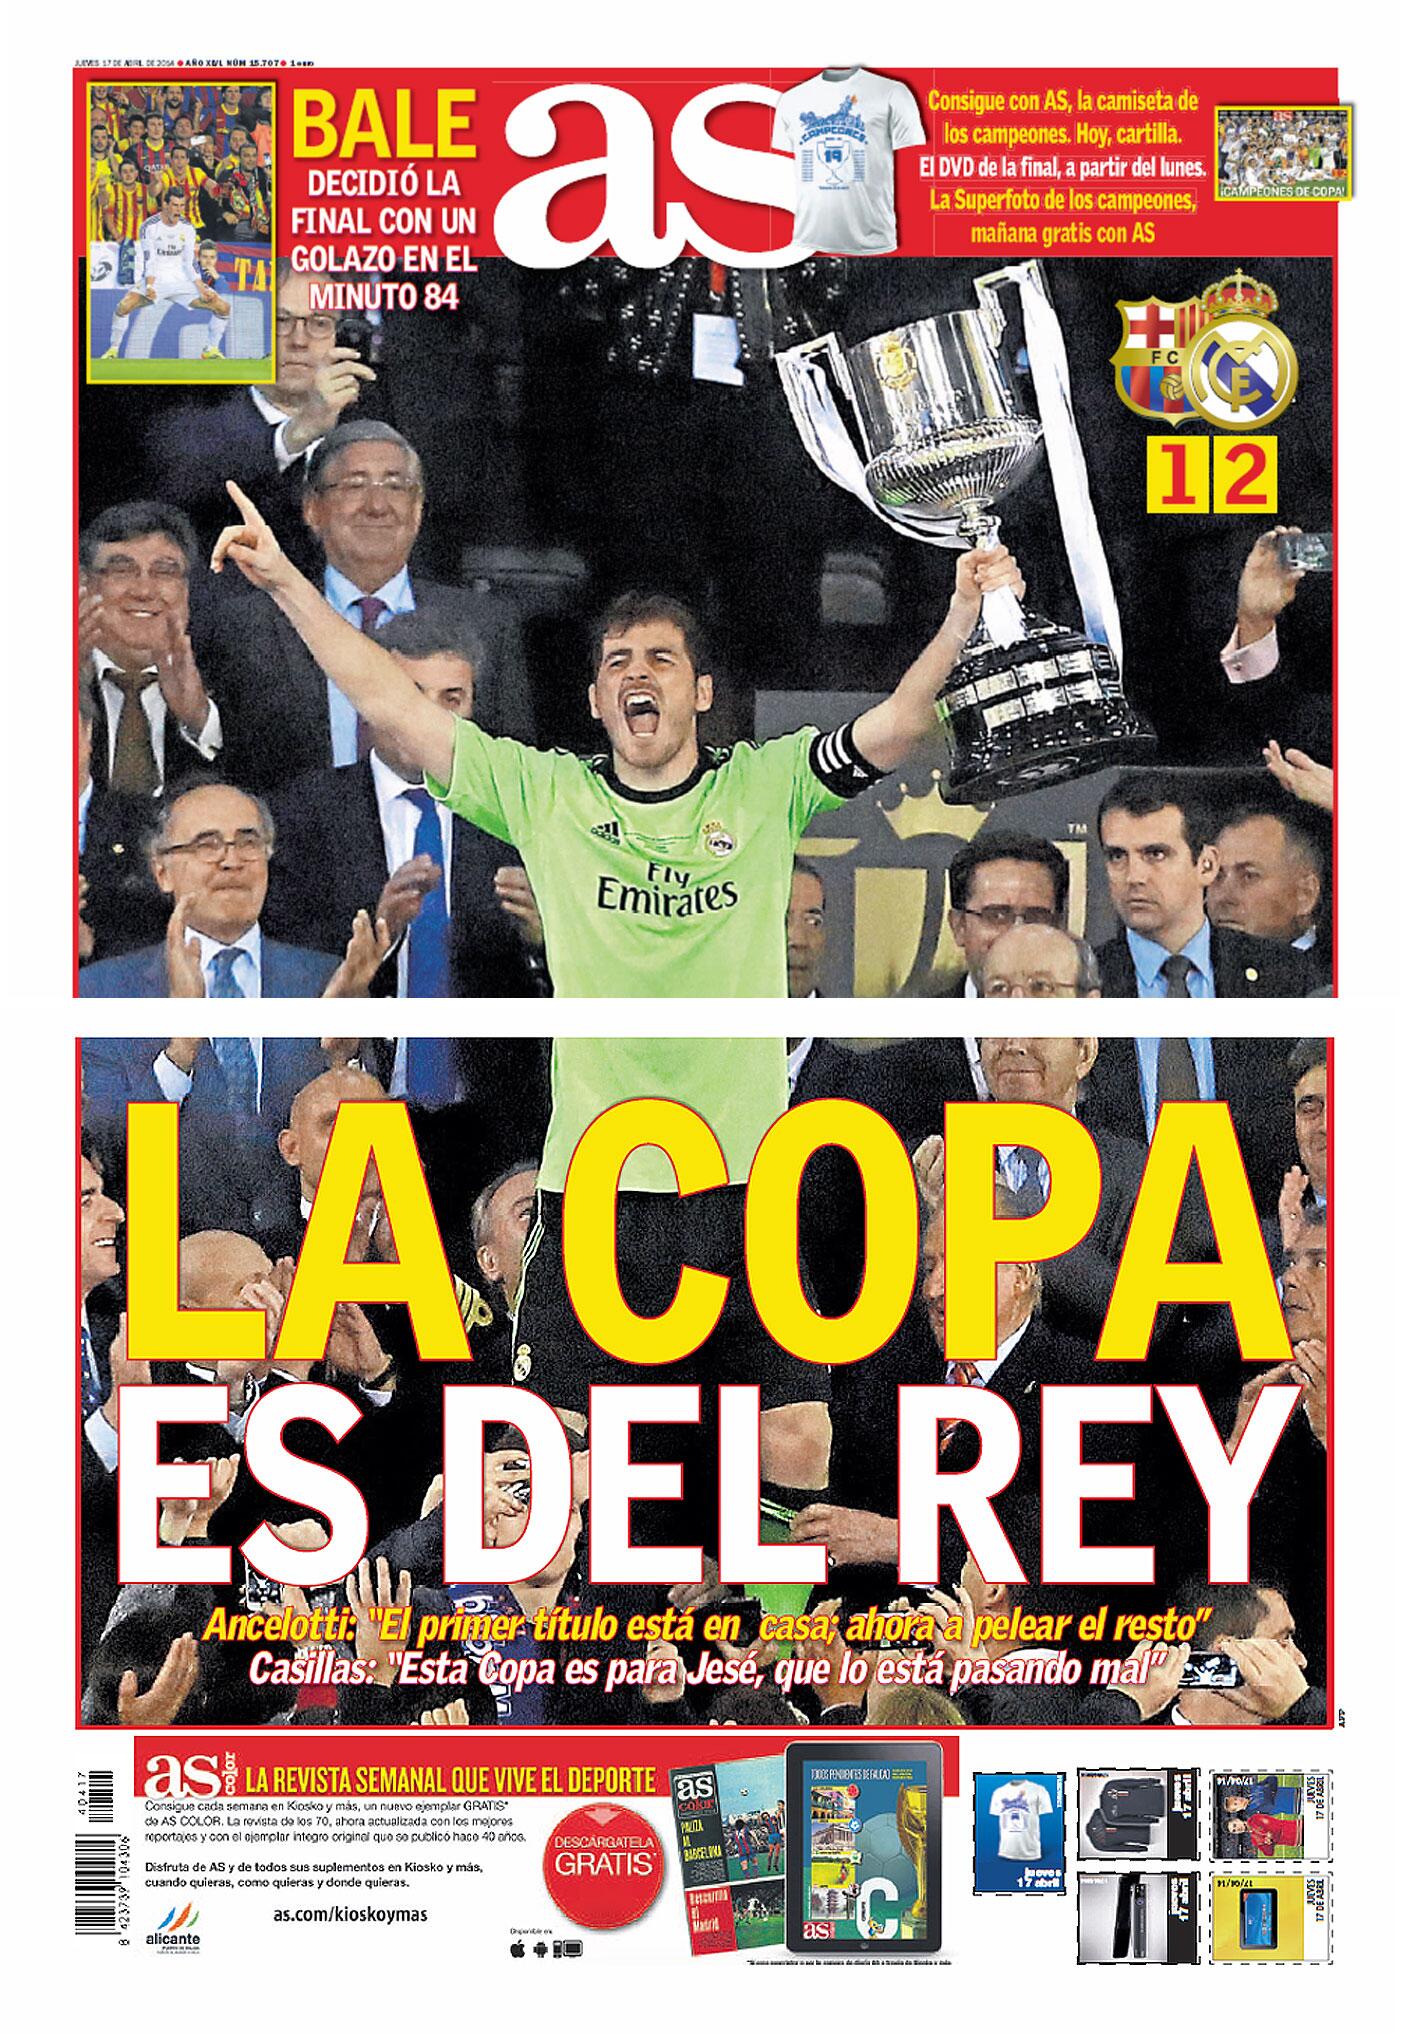 Diario AS on Twitter: "La portada de @diarioas hoy: La Copa es del rey http://t.co/pjG06BfX8P http://t.co/k6MVr0WcSm" / Twitter